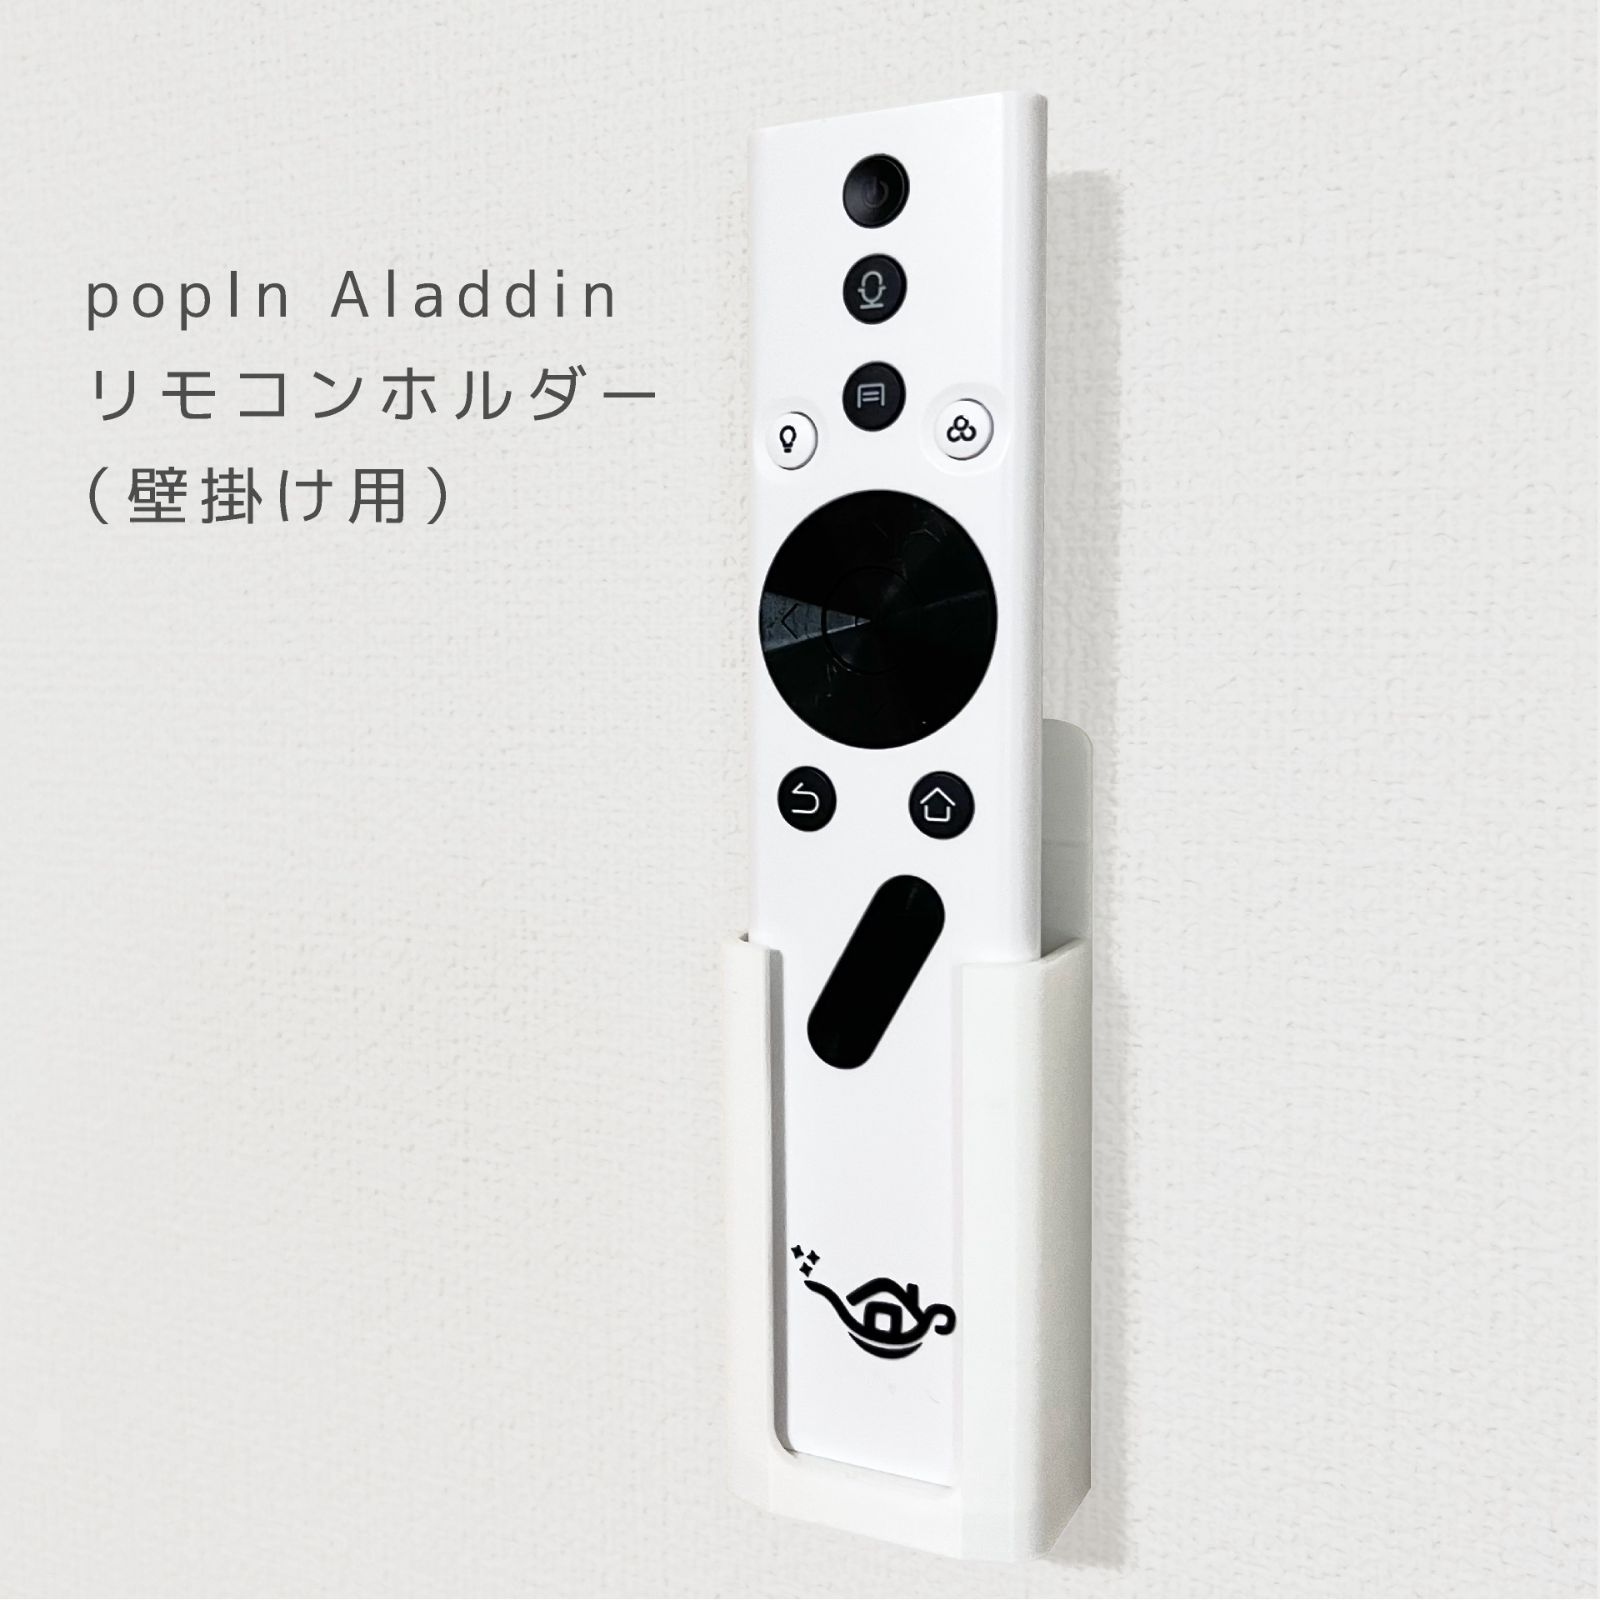 極美品ポップイン アラジン 2 popIn Aladdin2 新品リモコン付定価99800円